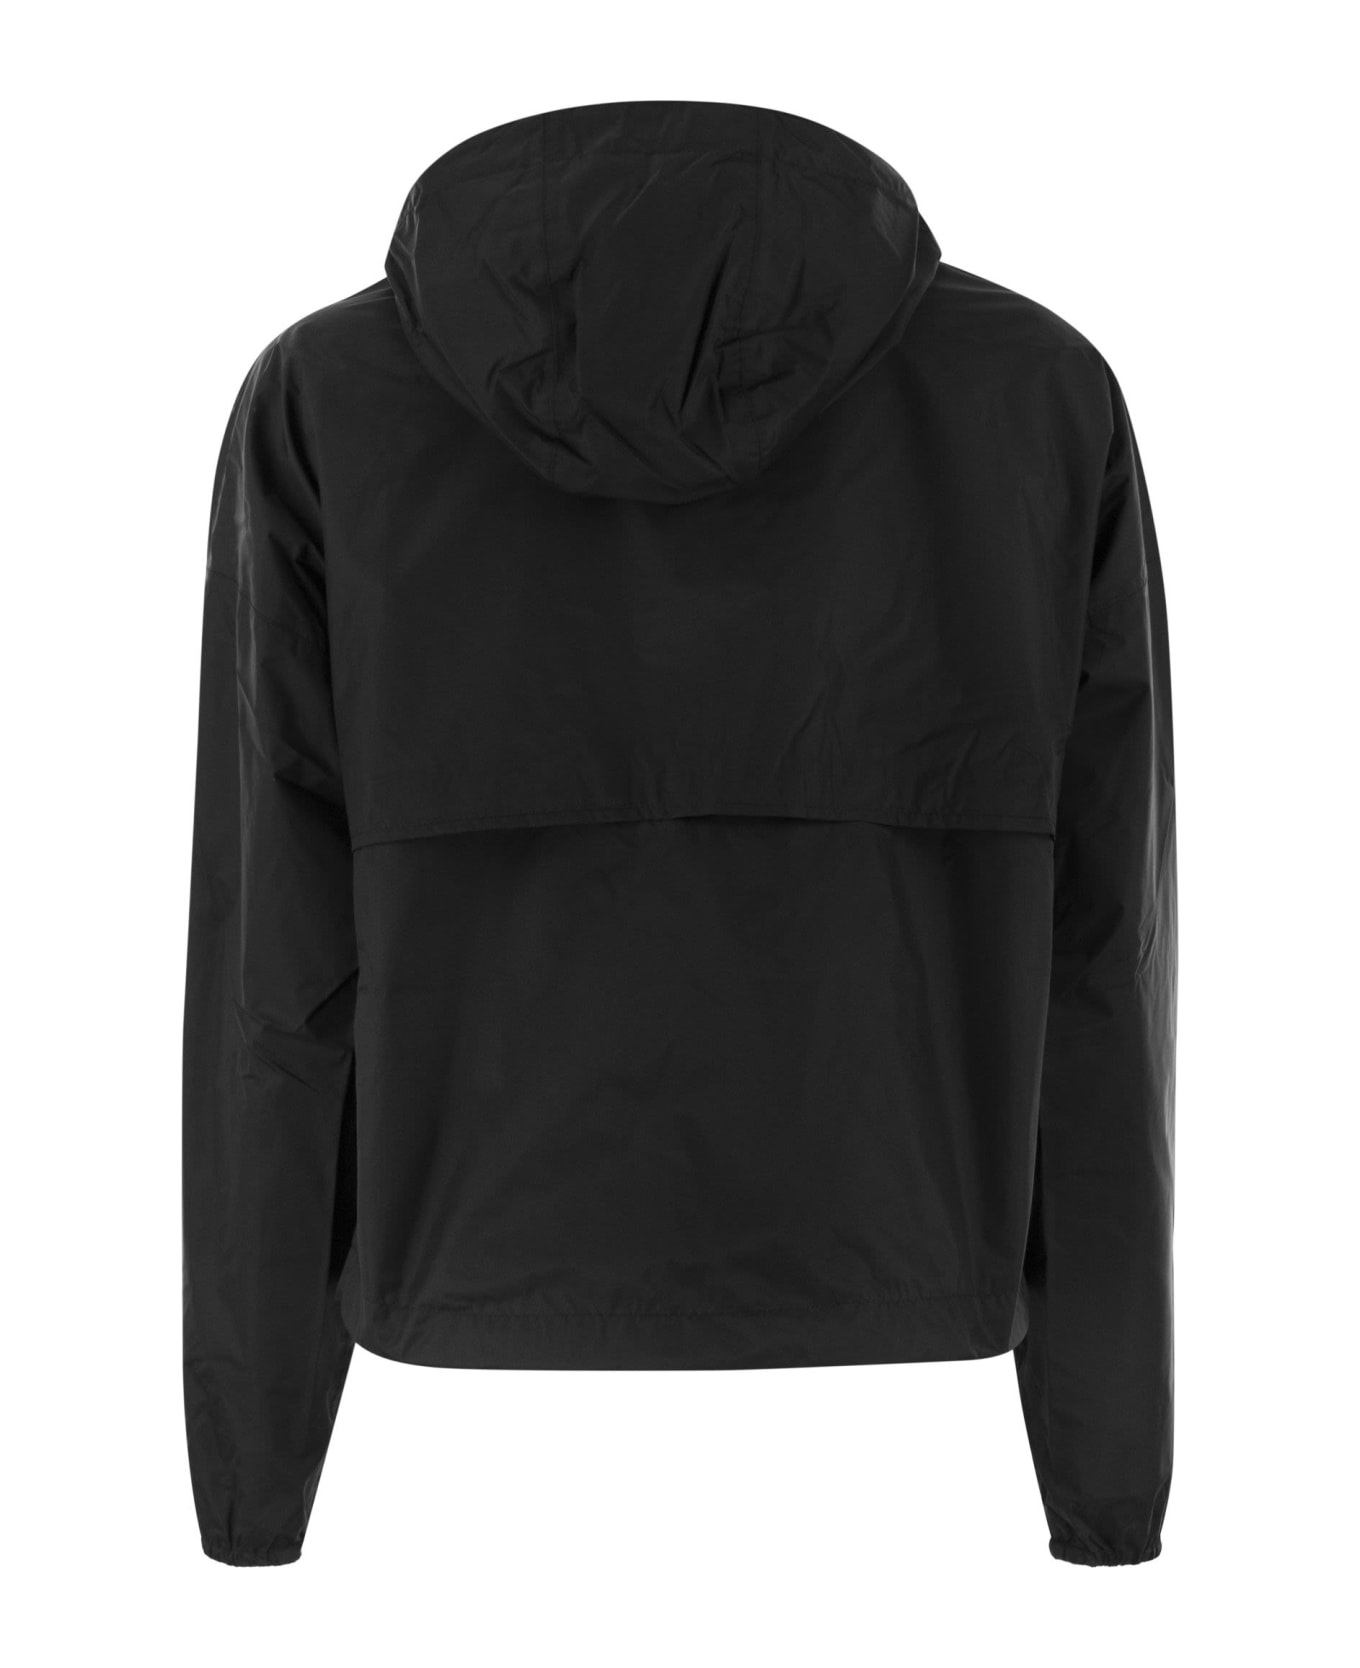 K-Way Laurette Plus - Reversible Hooded Jacket - Black/beige ジャケット